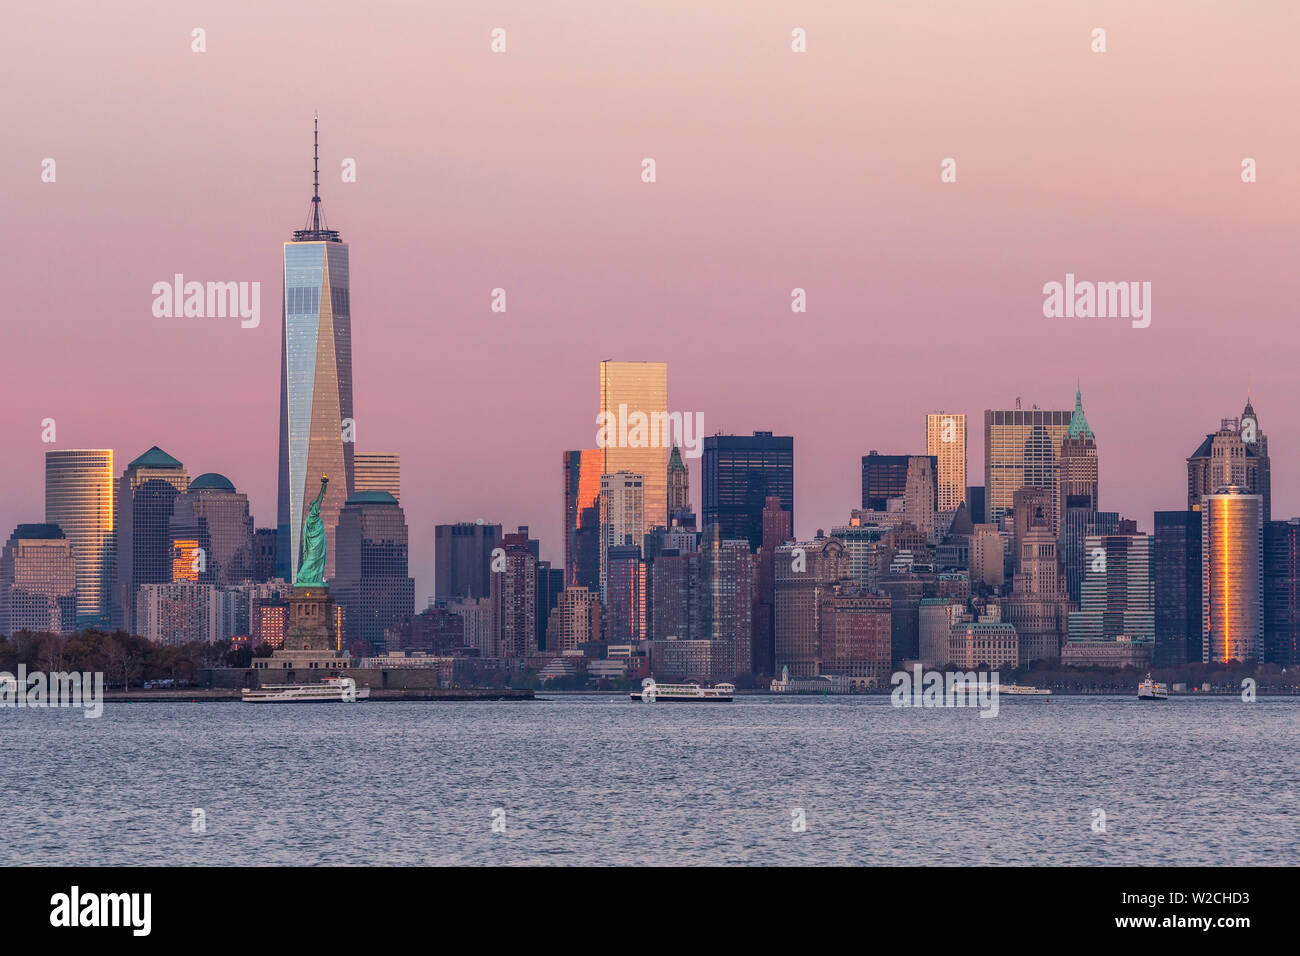 La estatua de la libertad, One World Trade Center y el centro de Manhattan, al otro lado del Río Hudson, Nueva York, Manhattan, Estados Unidos de América Foto de stock